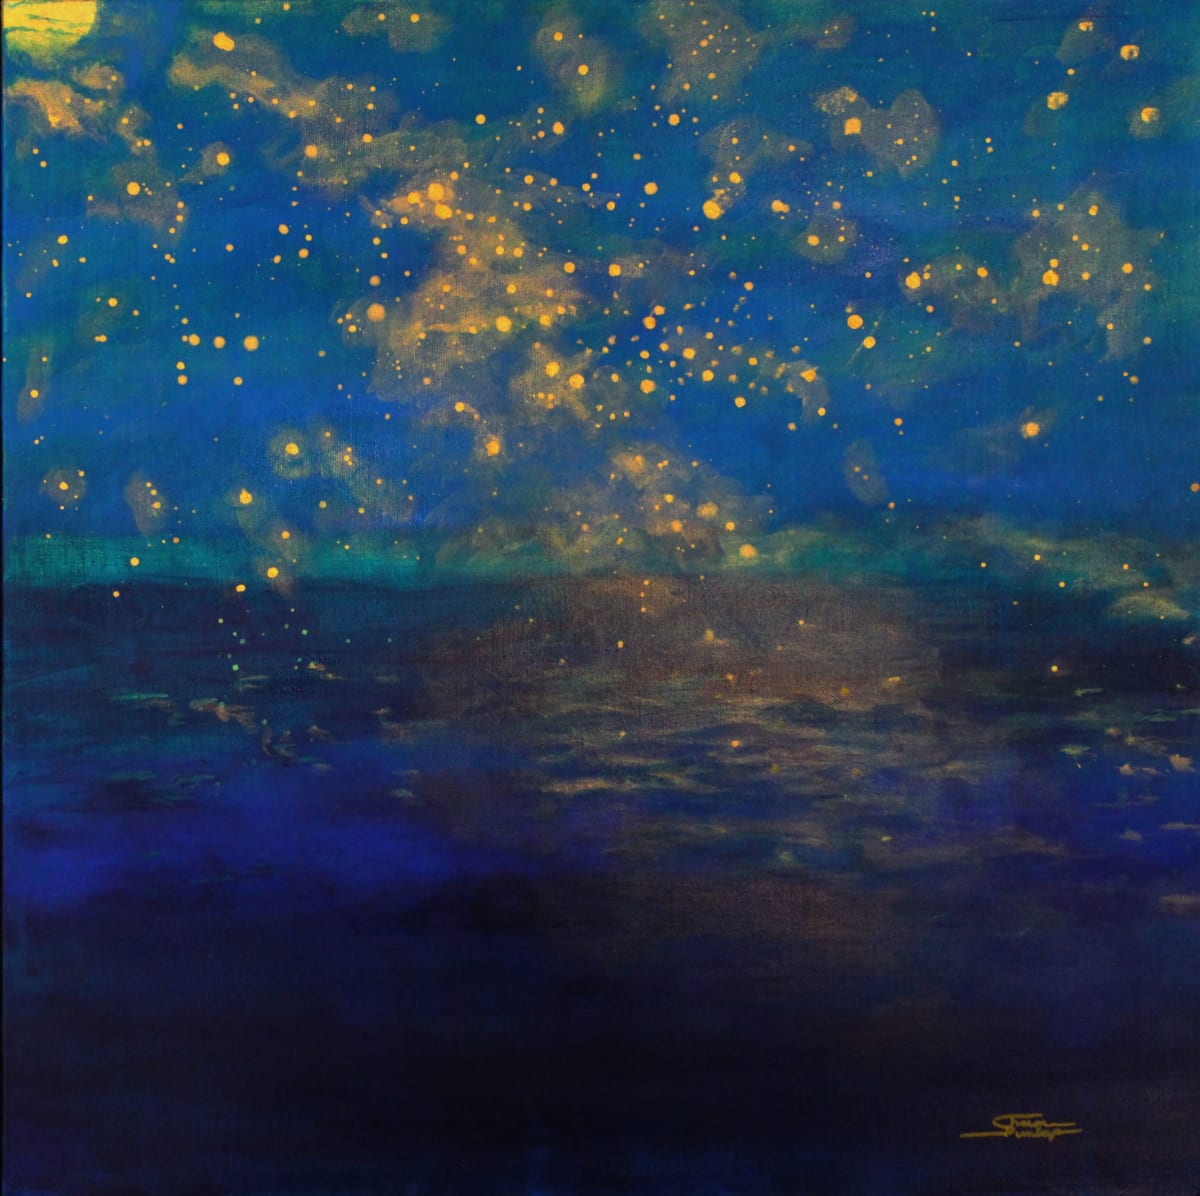 Sky Full of Stars by Sharon Dunlap 